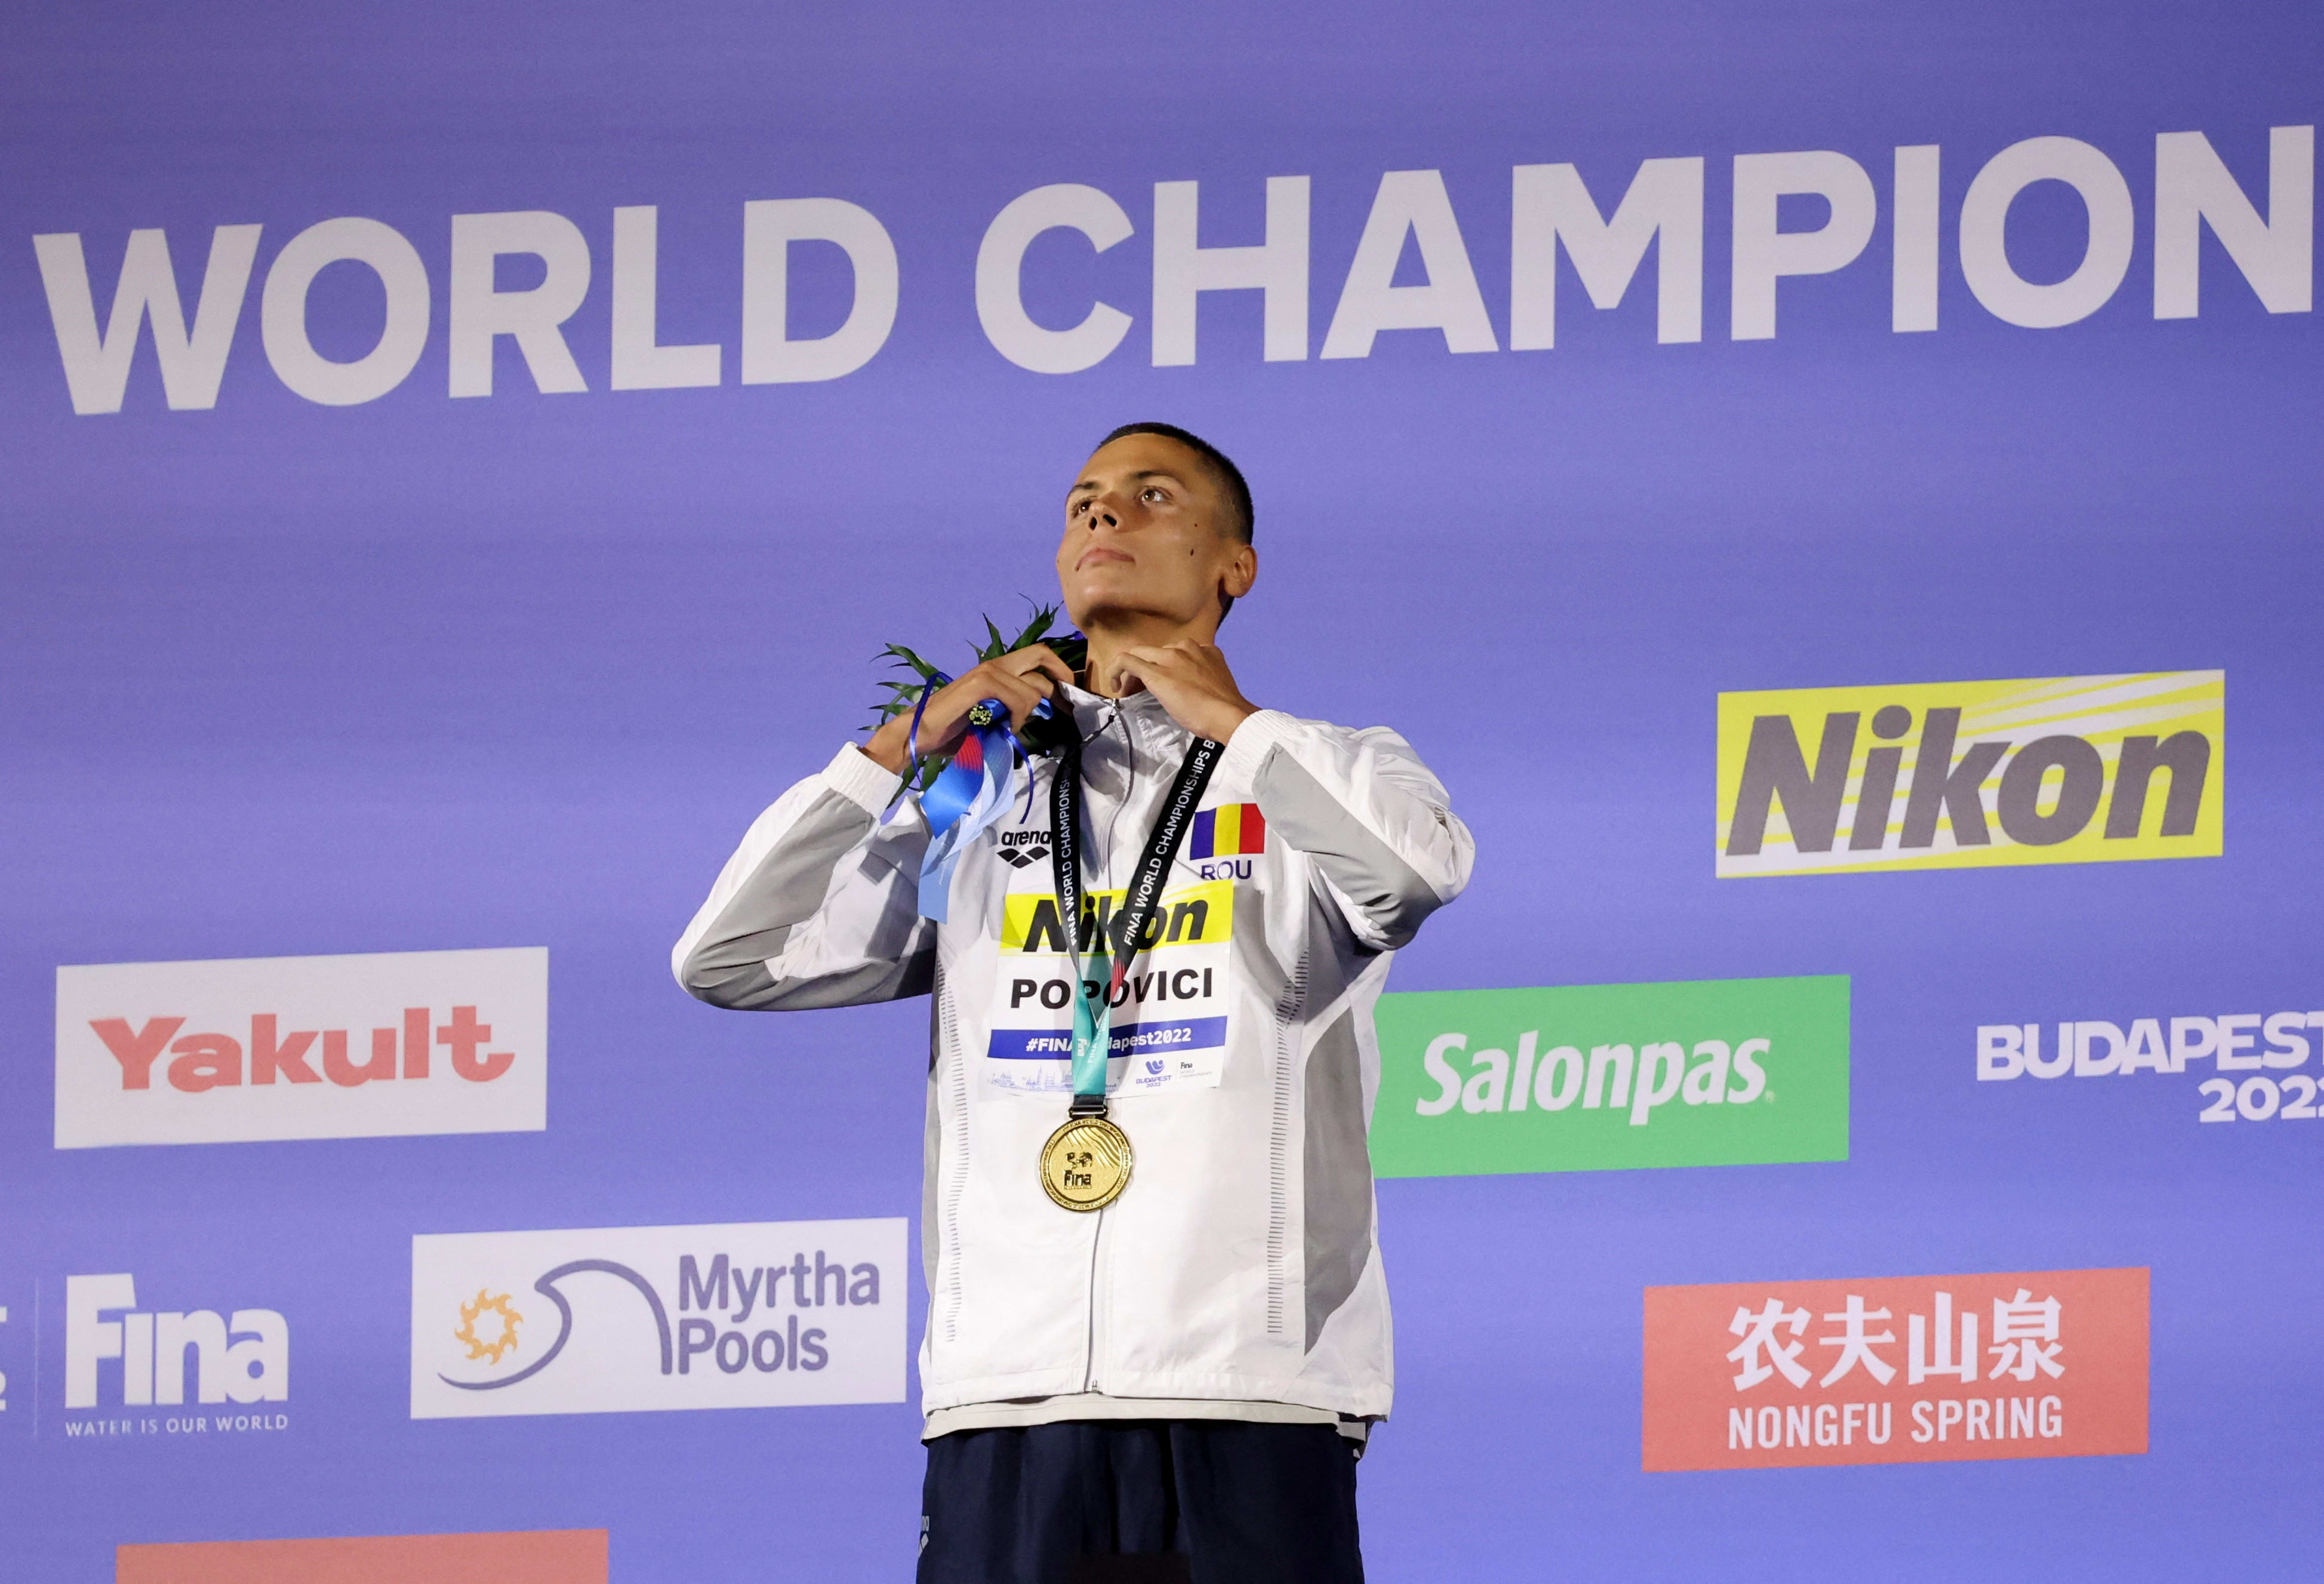 דויד פופוביץ' שחיין רומני עם מדליית זהב באליפות העולם